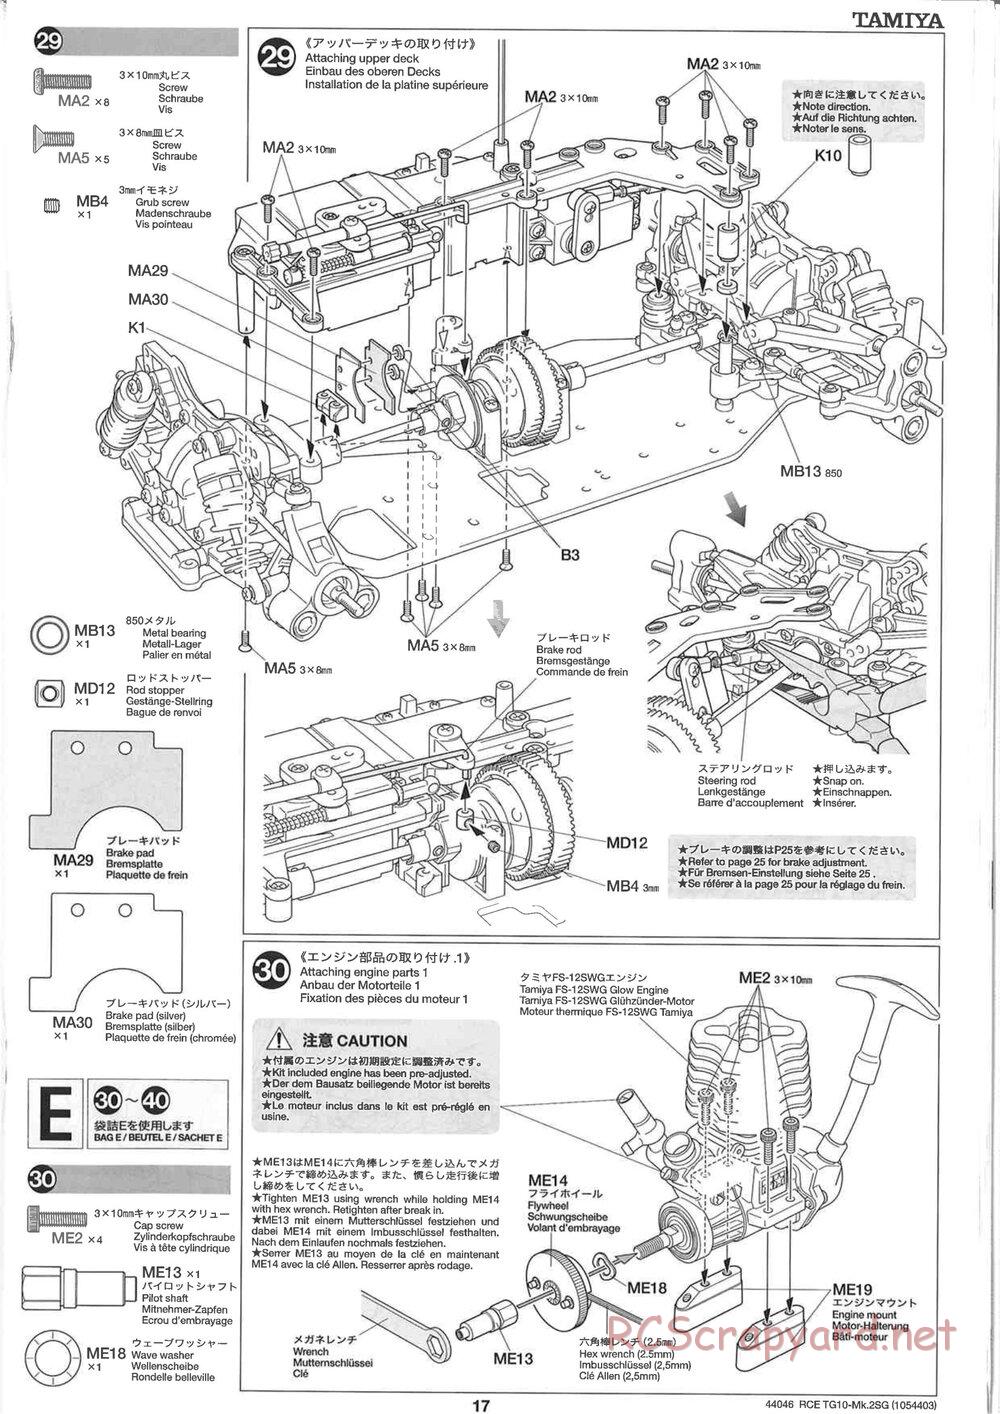 Tamiya - TG10 Mk.2SG Chassis - Manual - Page 17